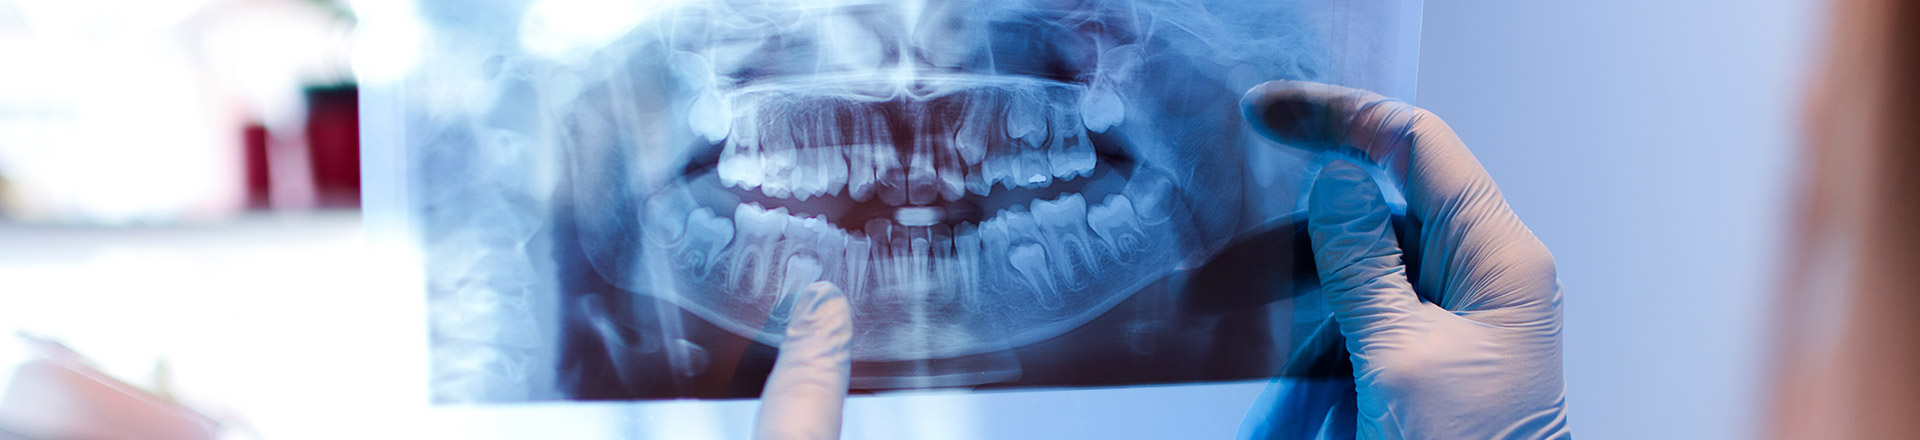 Neuigkeiten aus Ihrer Zahnarztpraxis in Olpe – Zahnarzt-News